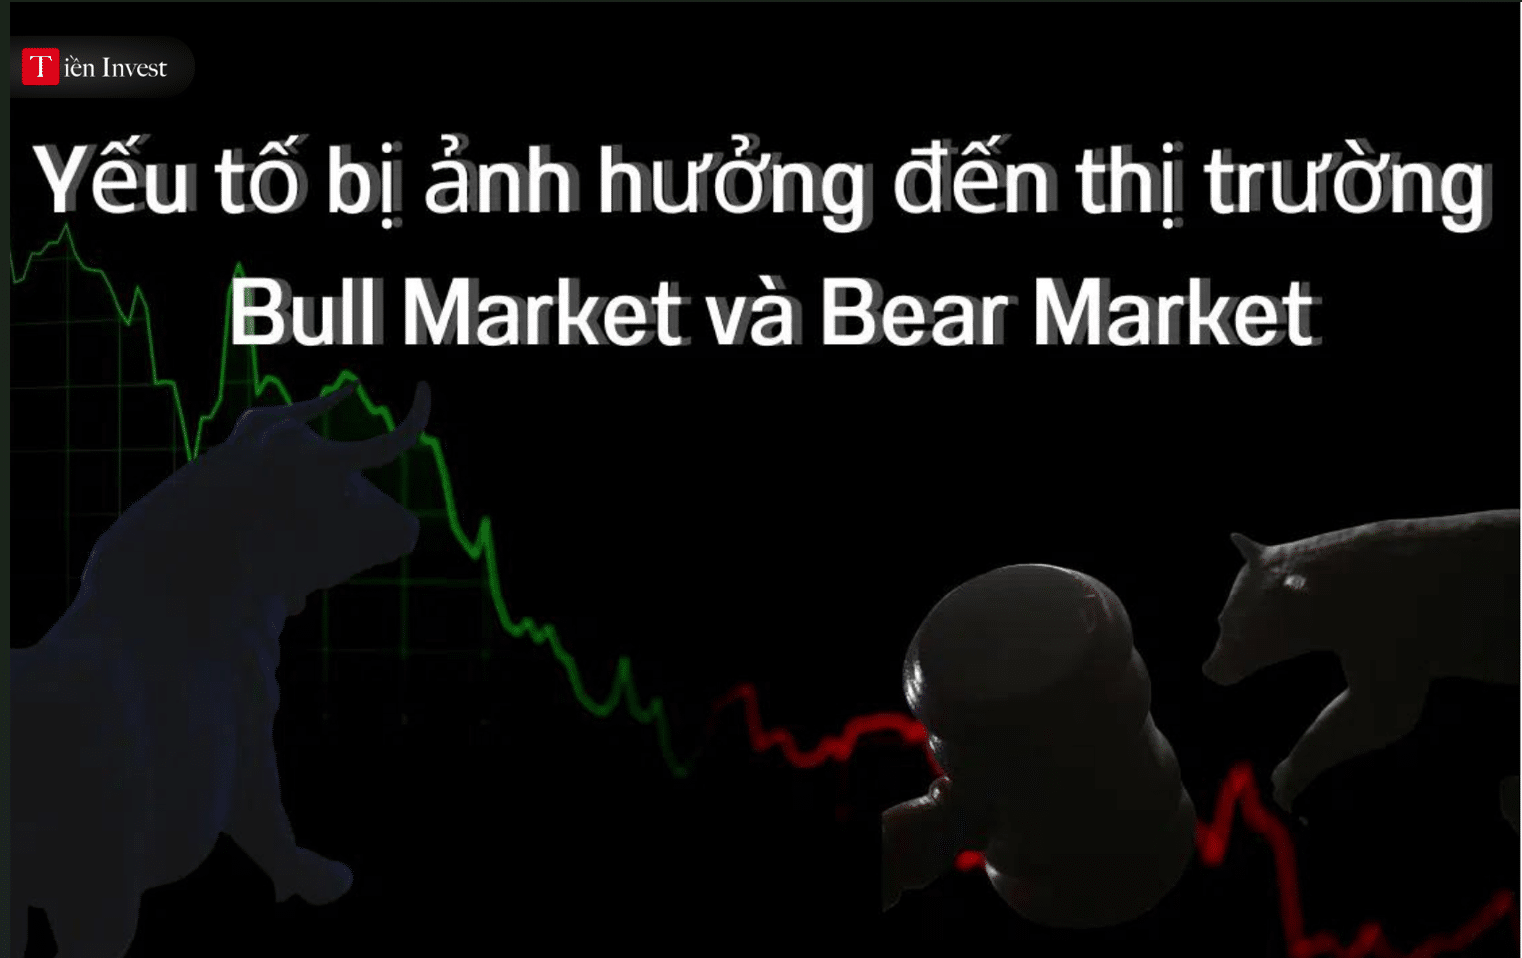 Bull Market là gì